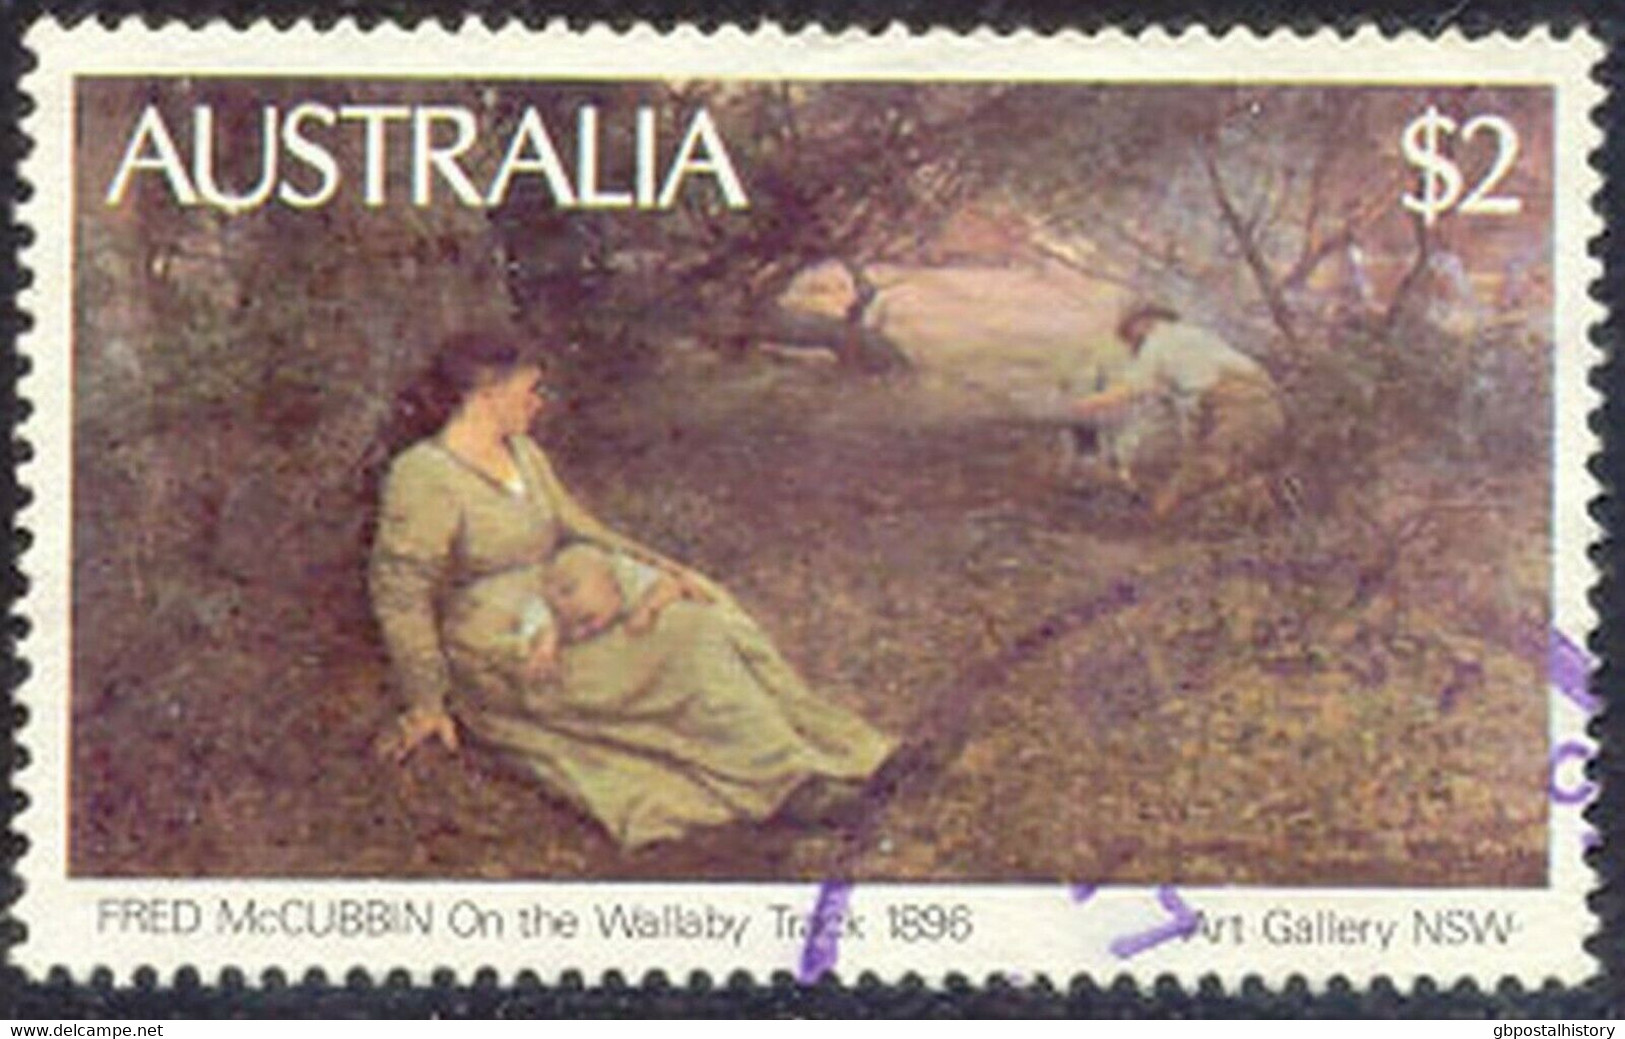 AUSTRALIA 1981 Painting $ 2 Superb Used COLOR VARIETY - Errors, Freaks & Oddities (EFO)